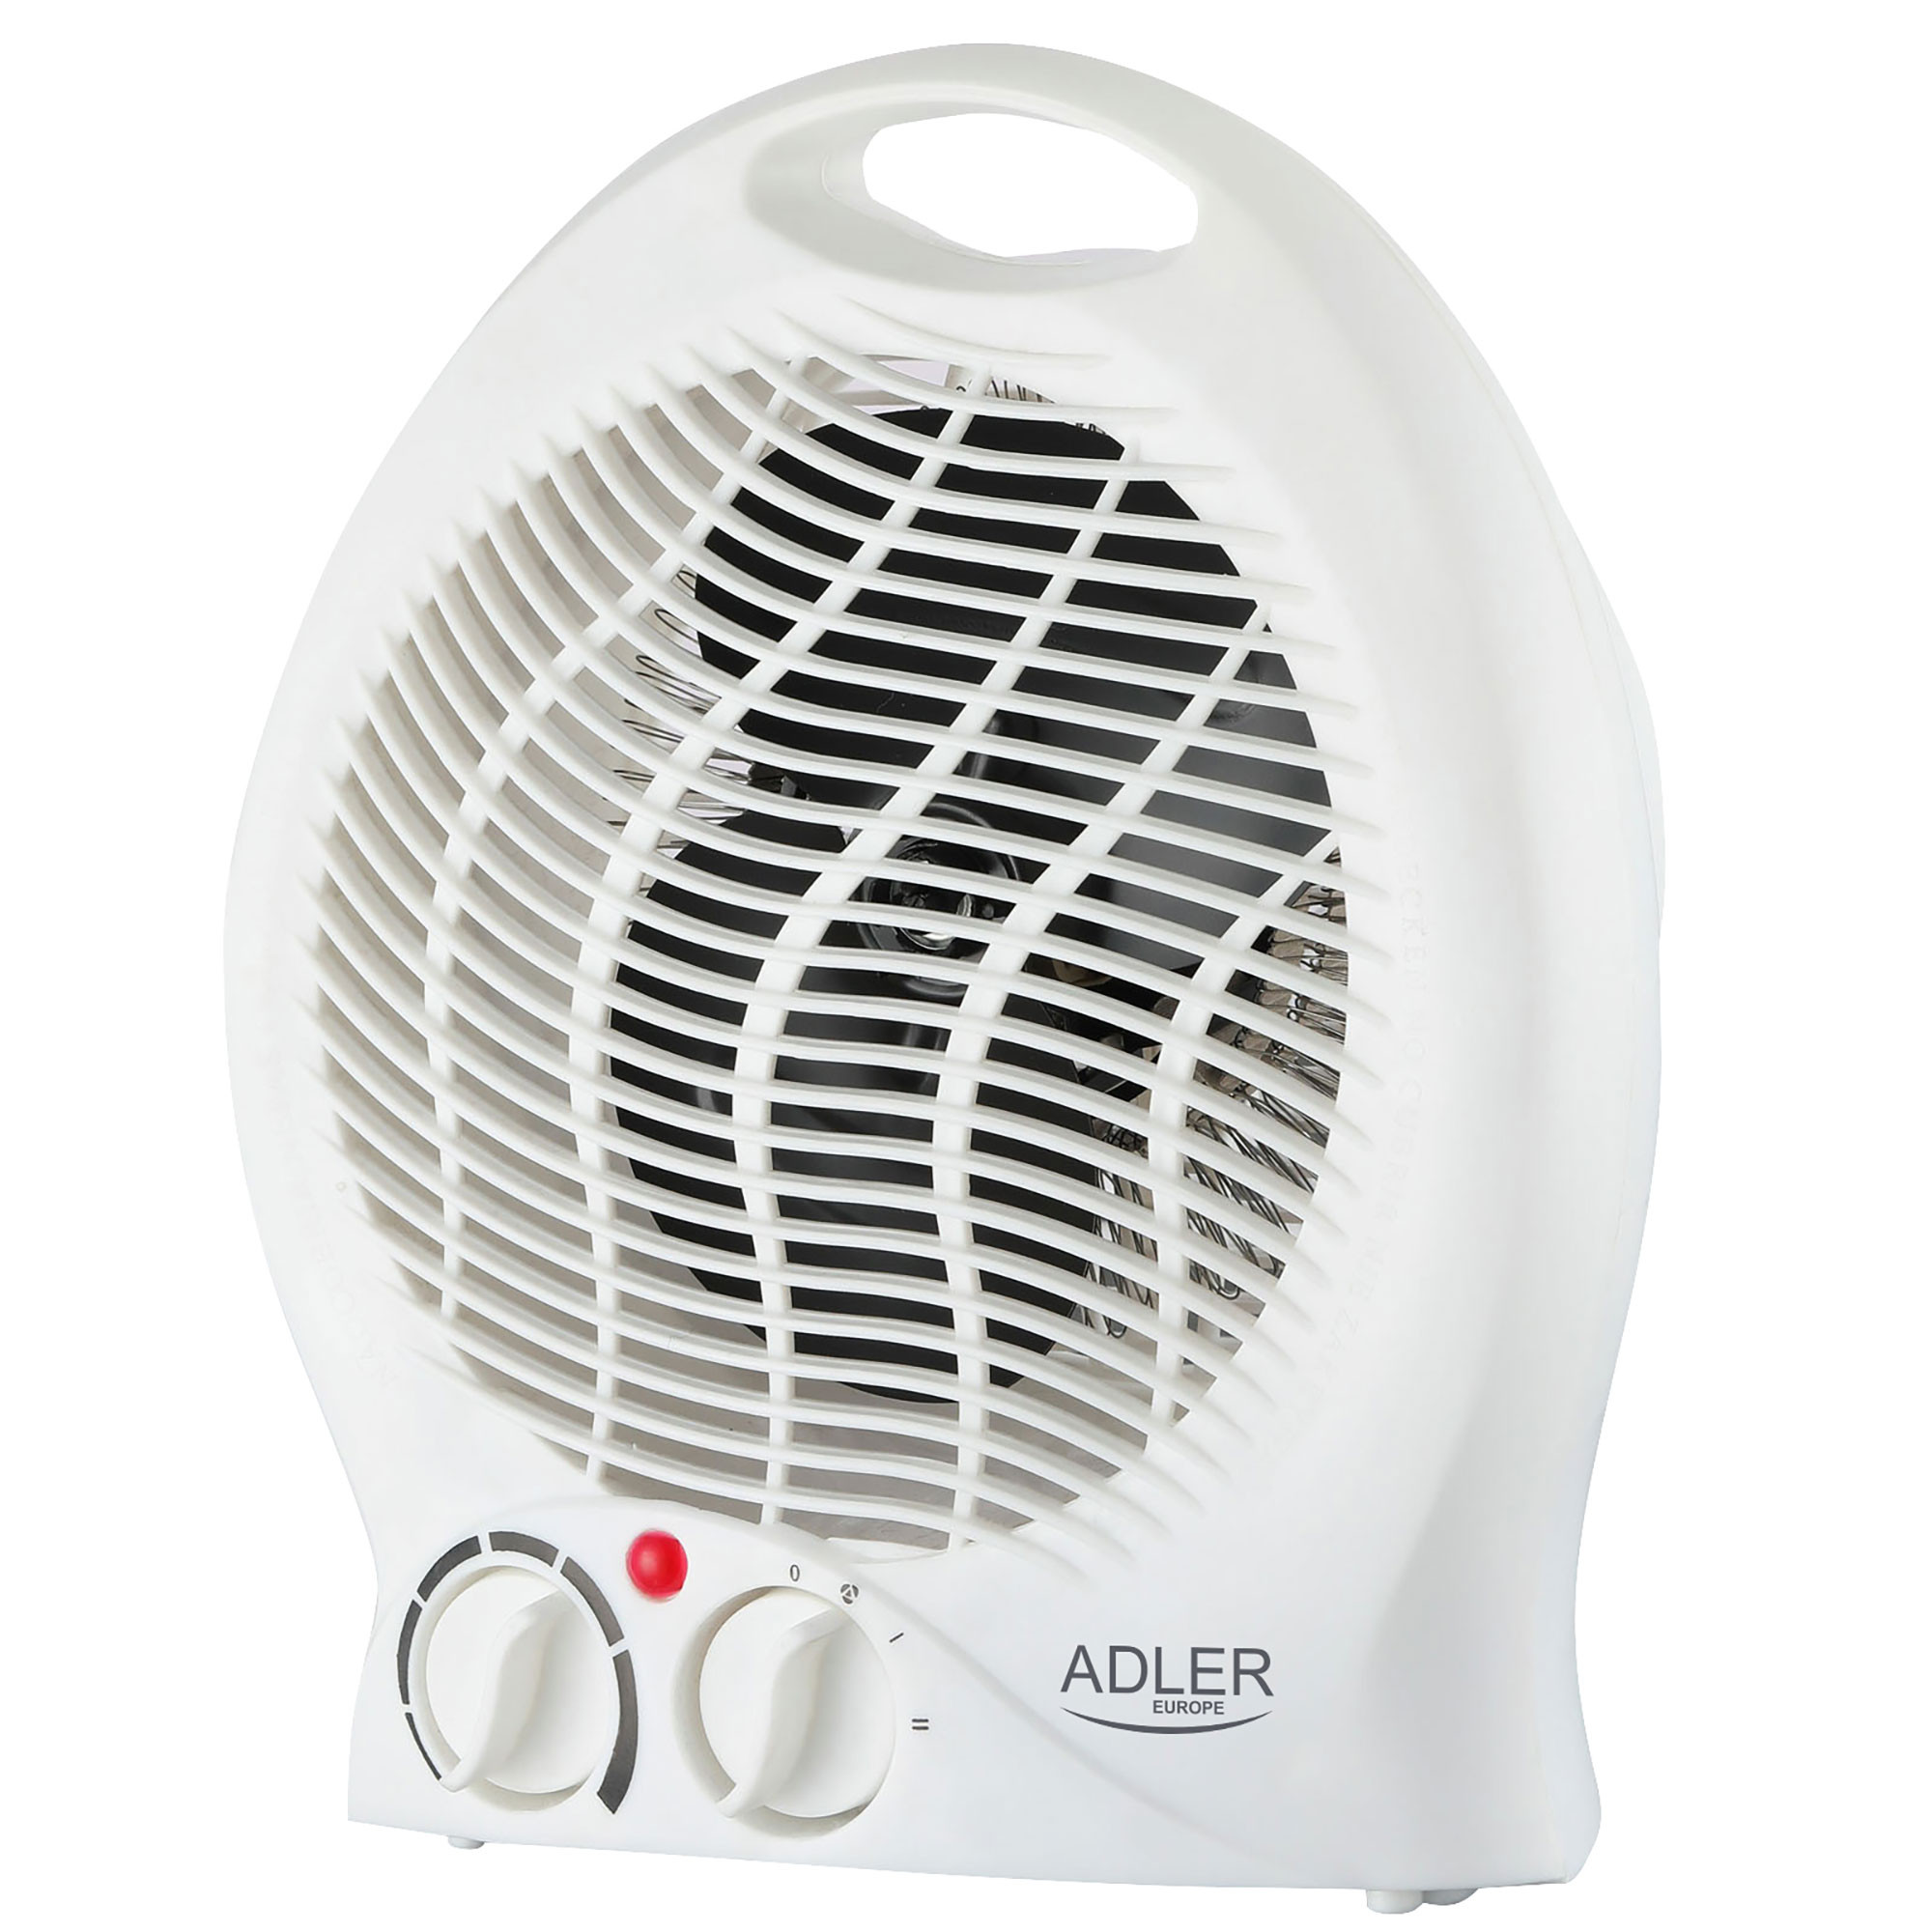 ADLER AD 7728 Calefactor Ventilador Eléctrico Portátil, Aire Caliente Frío, 2 Niveles de Potencia, Termostato, Sistema